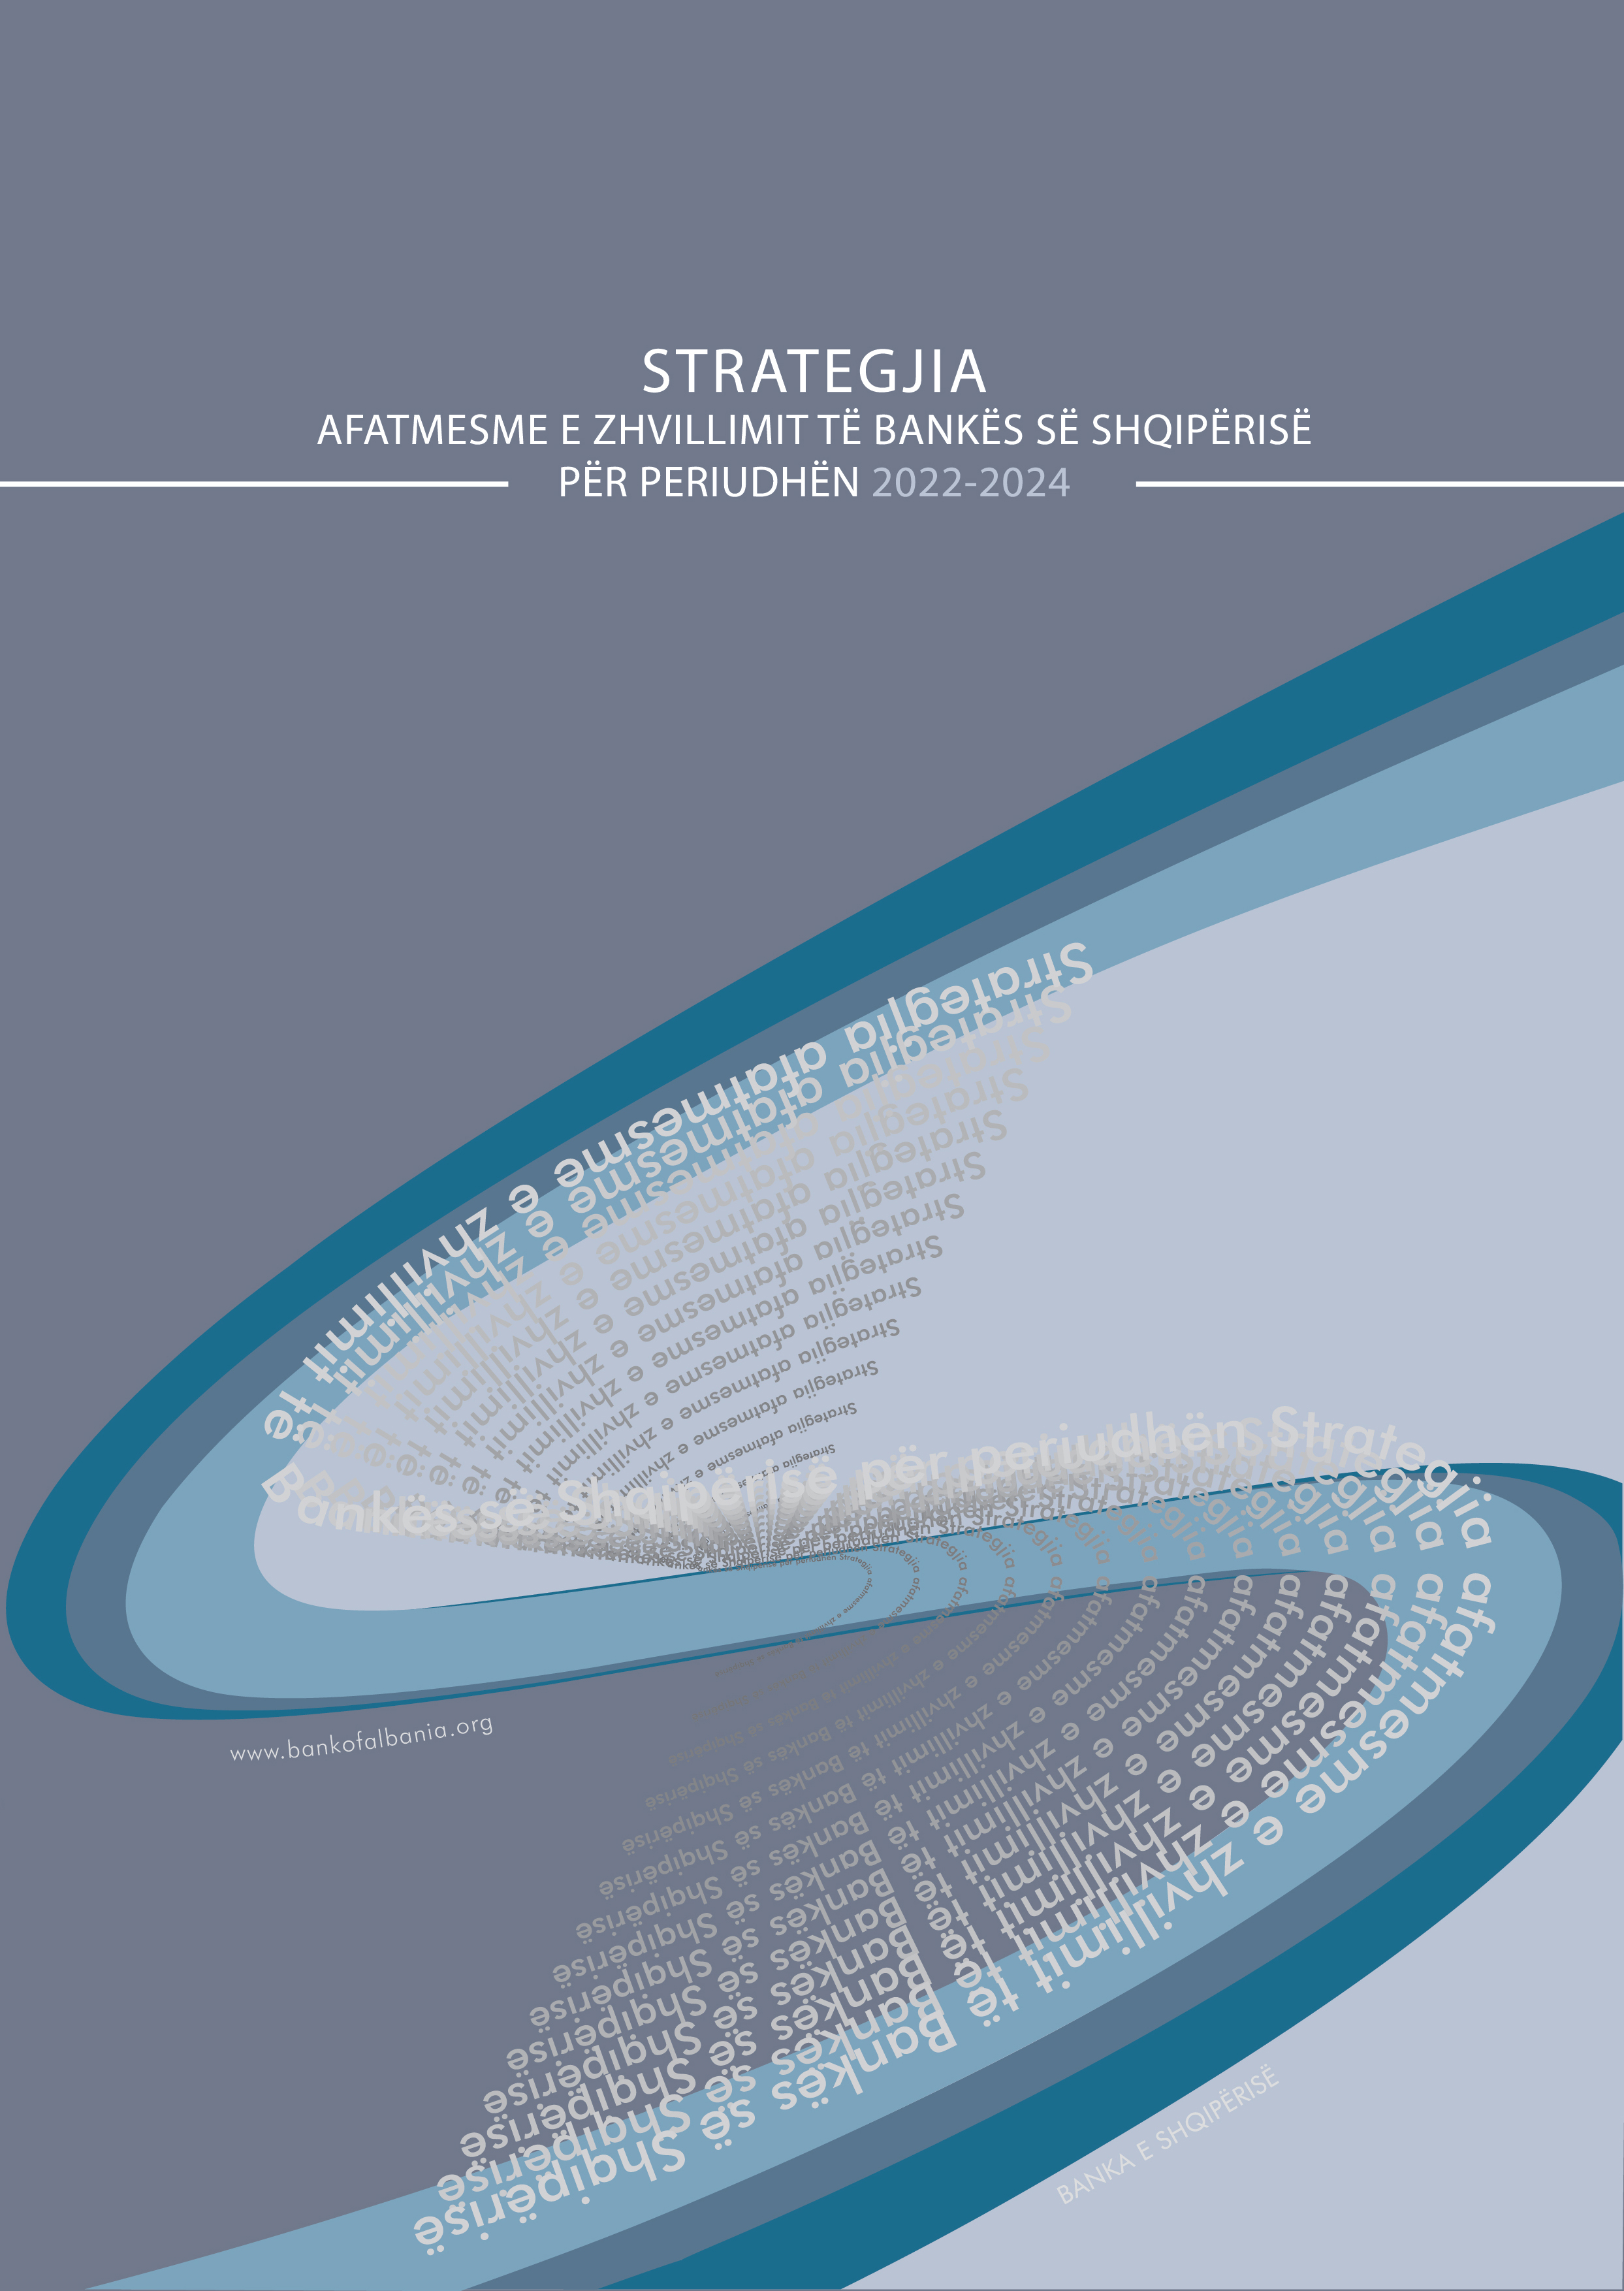 Strategjia afatmesme e zhvillimit të Bankës së Shqipërisë 2022-2024